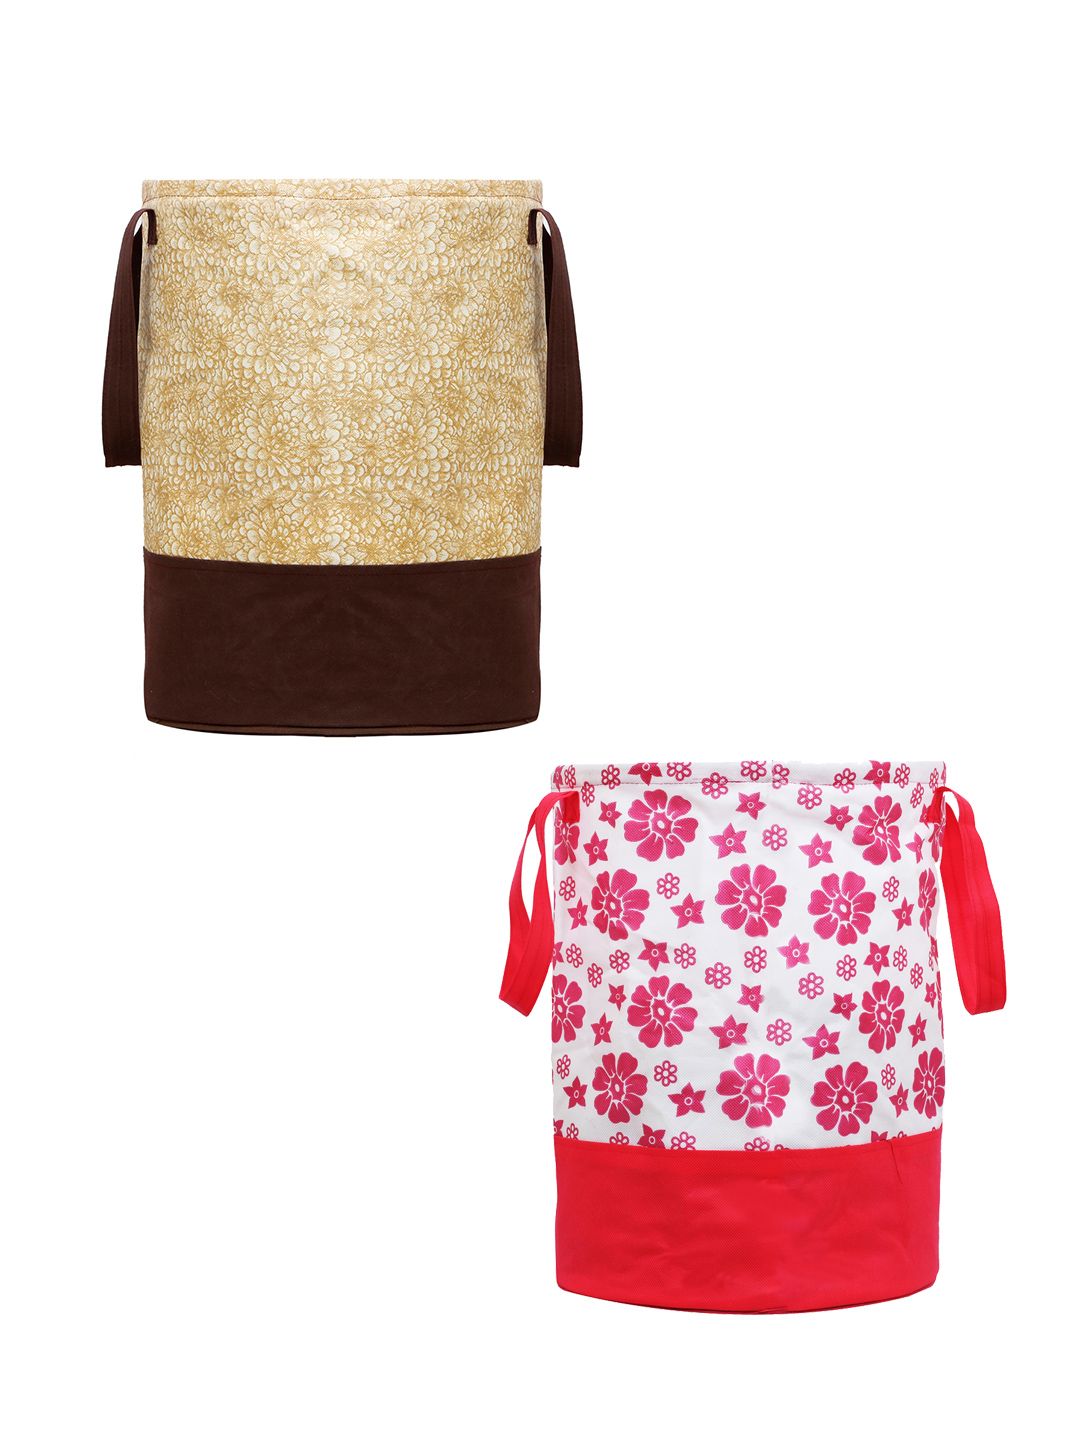 Kuber Industries Set Of 2 Beige & Pink Printed Waterproof Laundry Bags Price in India